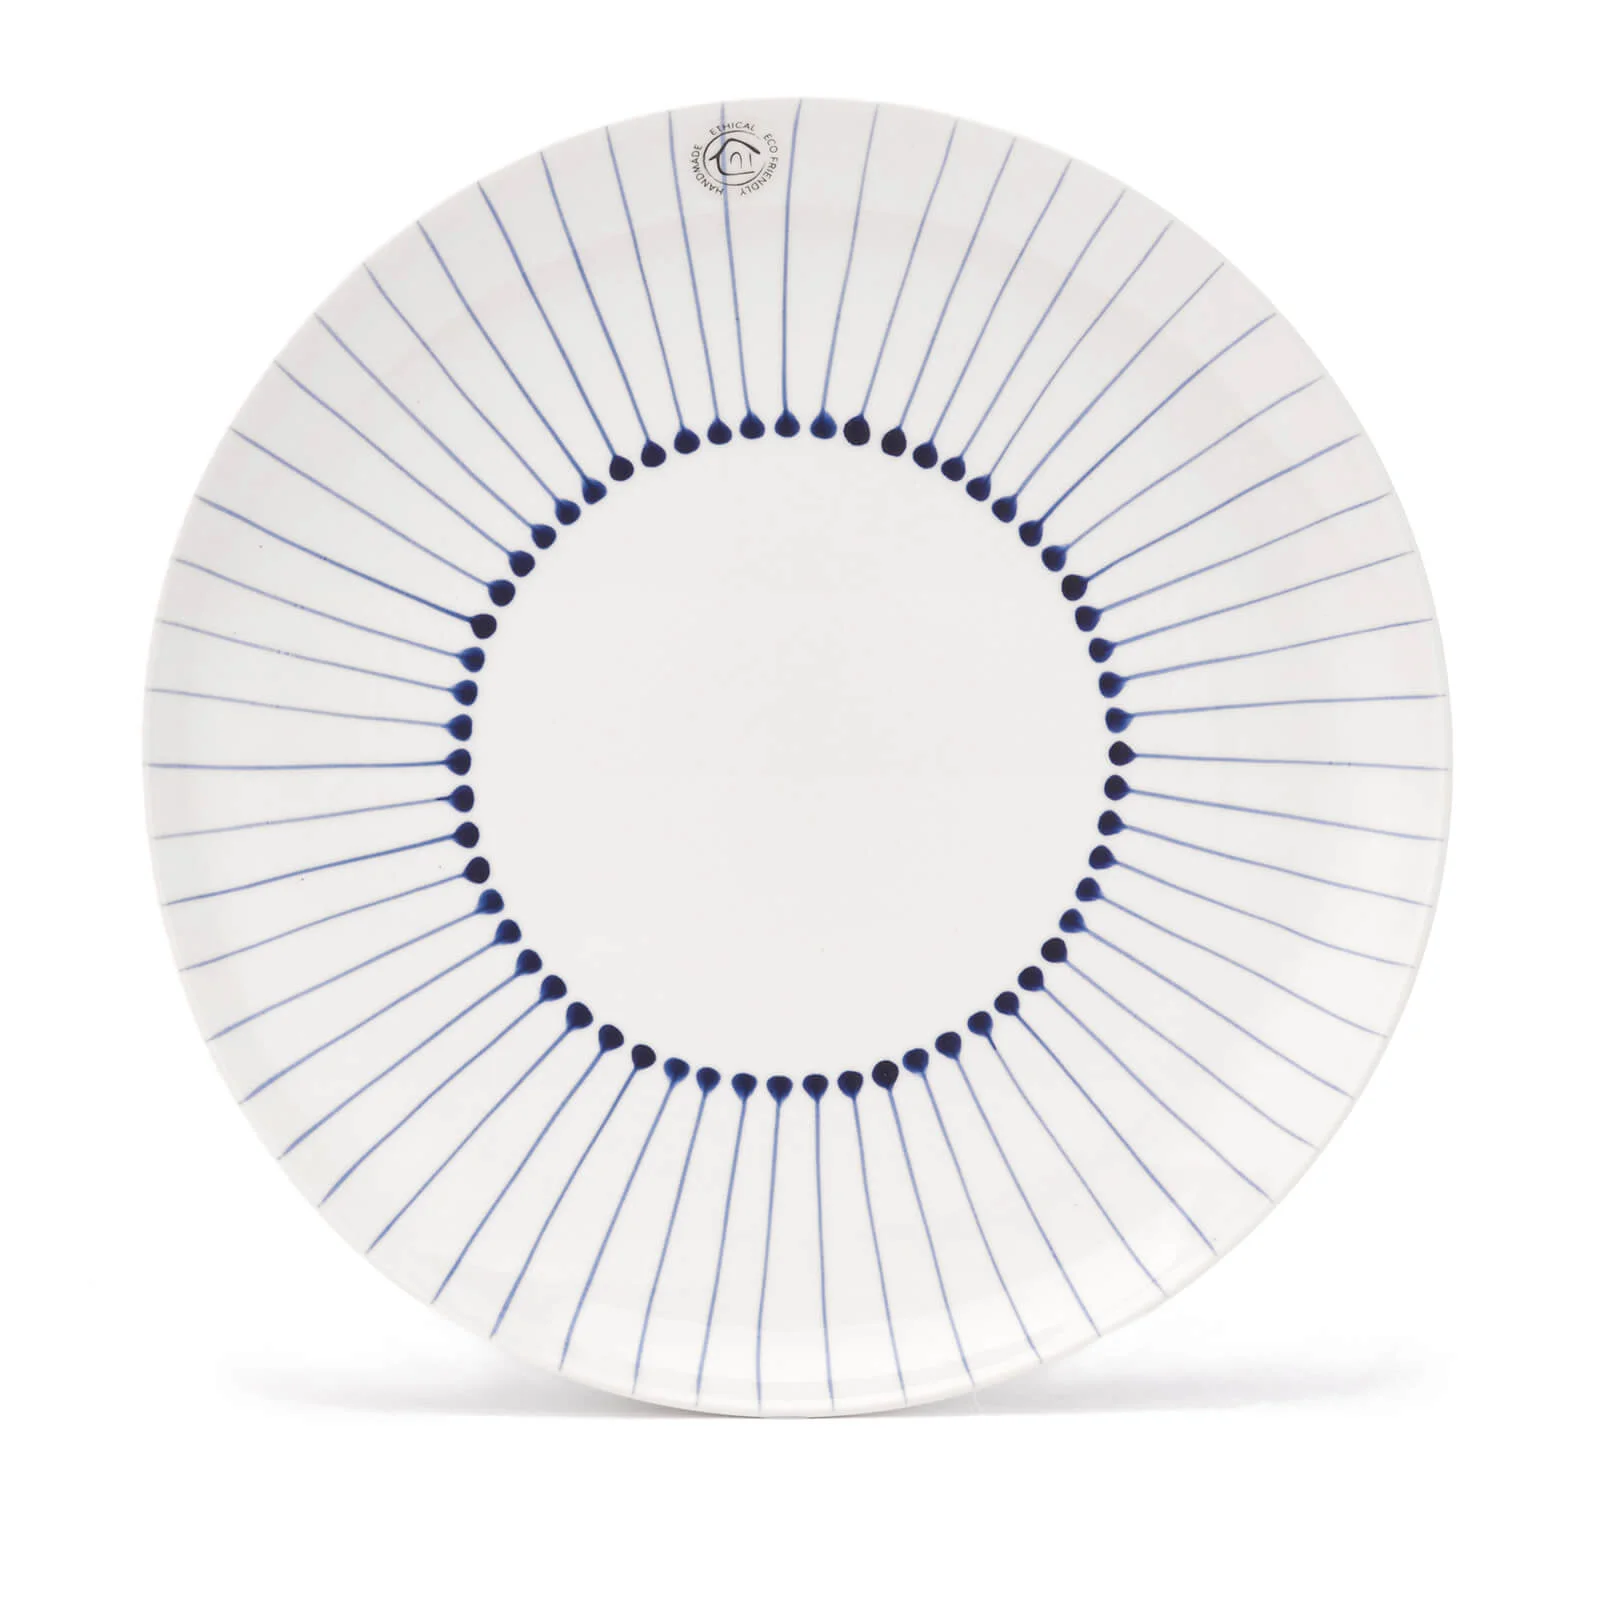 Nkuku Iba Ceramic Plate - Indigo - Dinner Plate Image 1